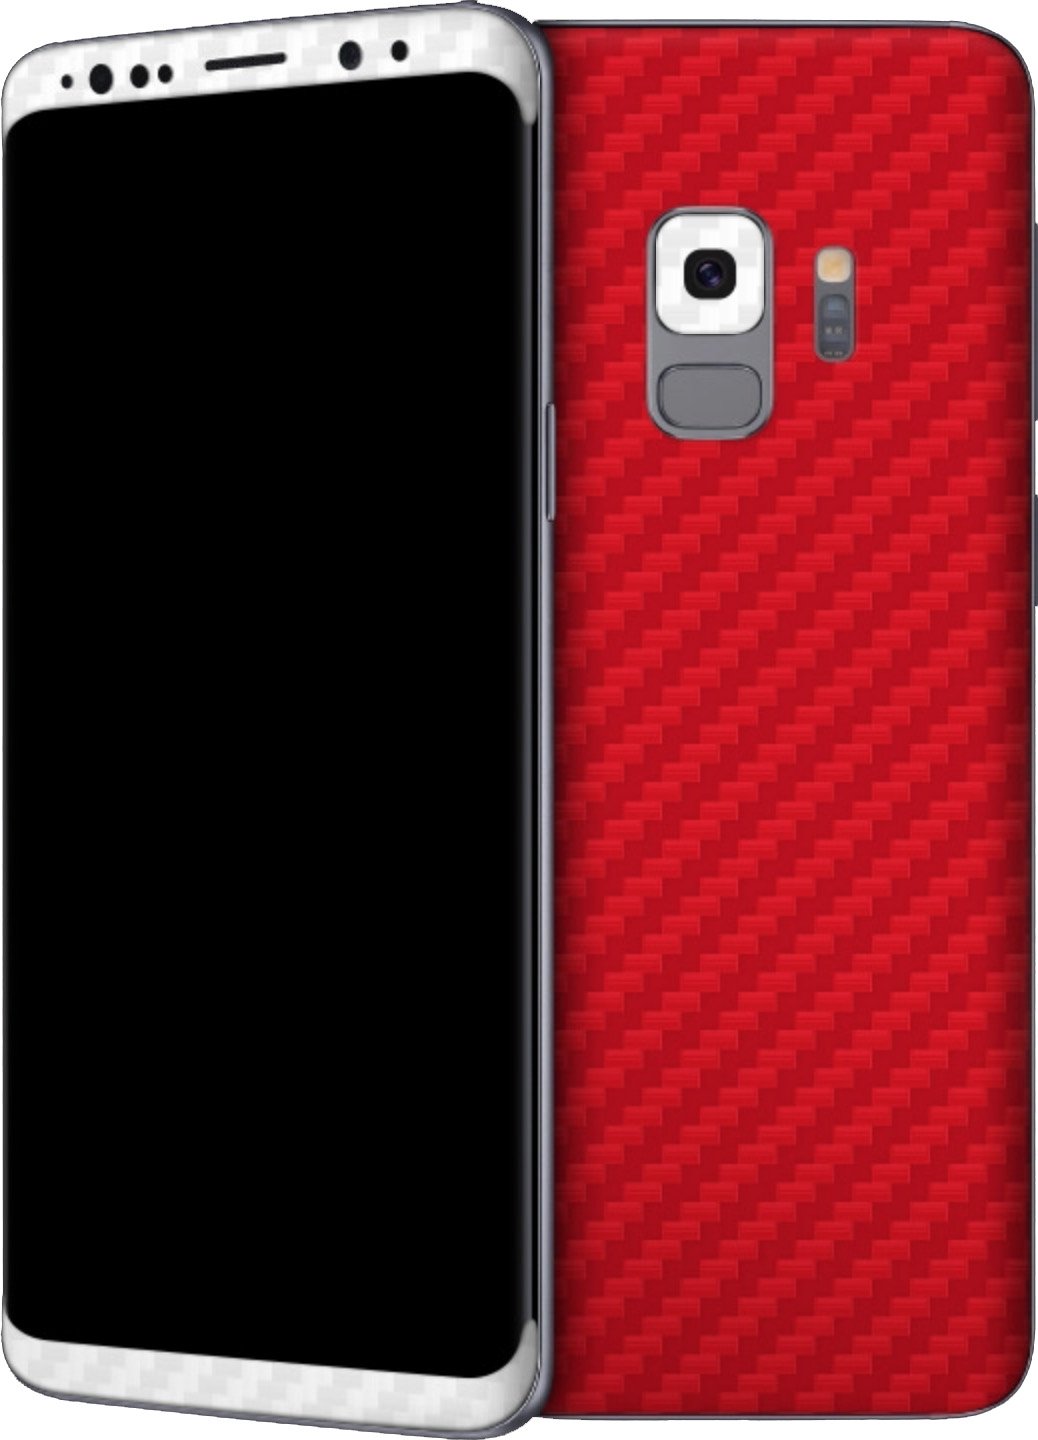 galleria di sfondi android centrale,custodia per cellulare,cellulare,aggeggio,rosso,nero